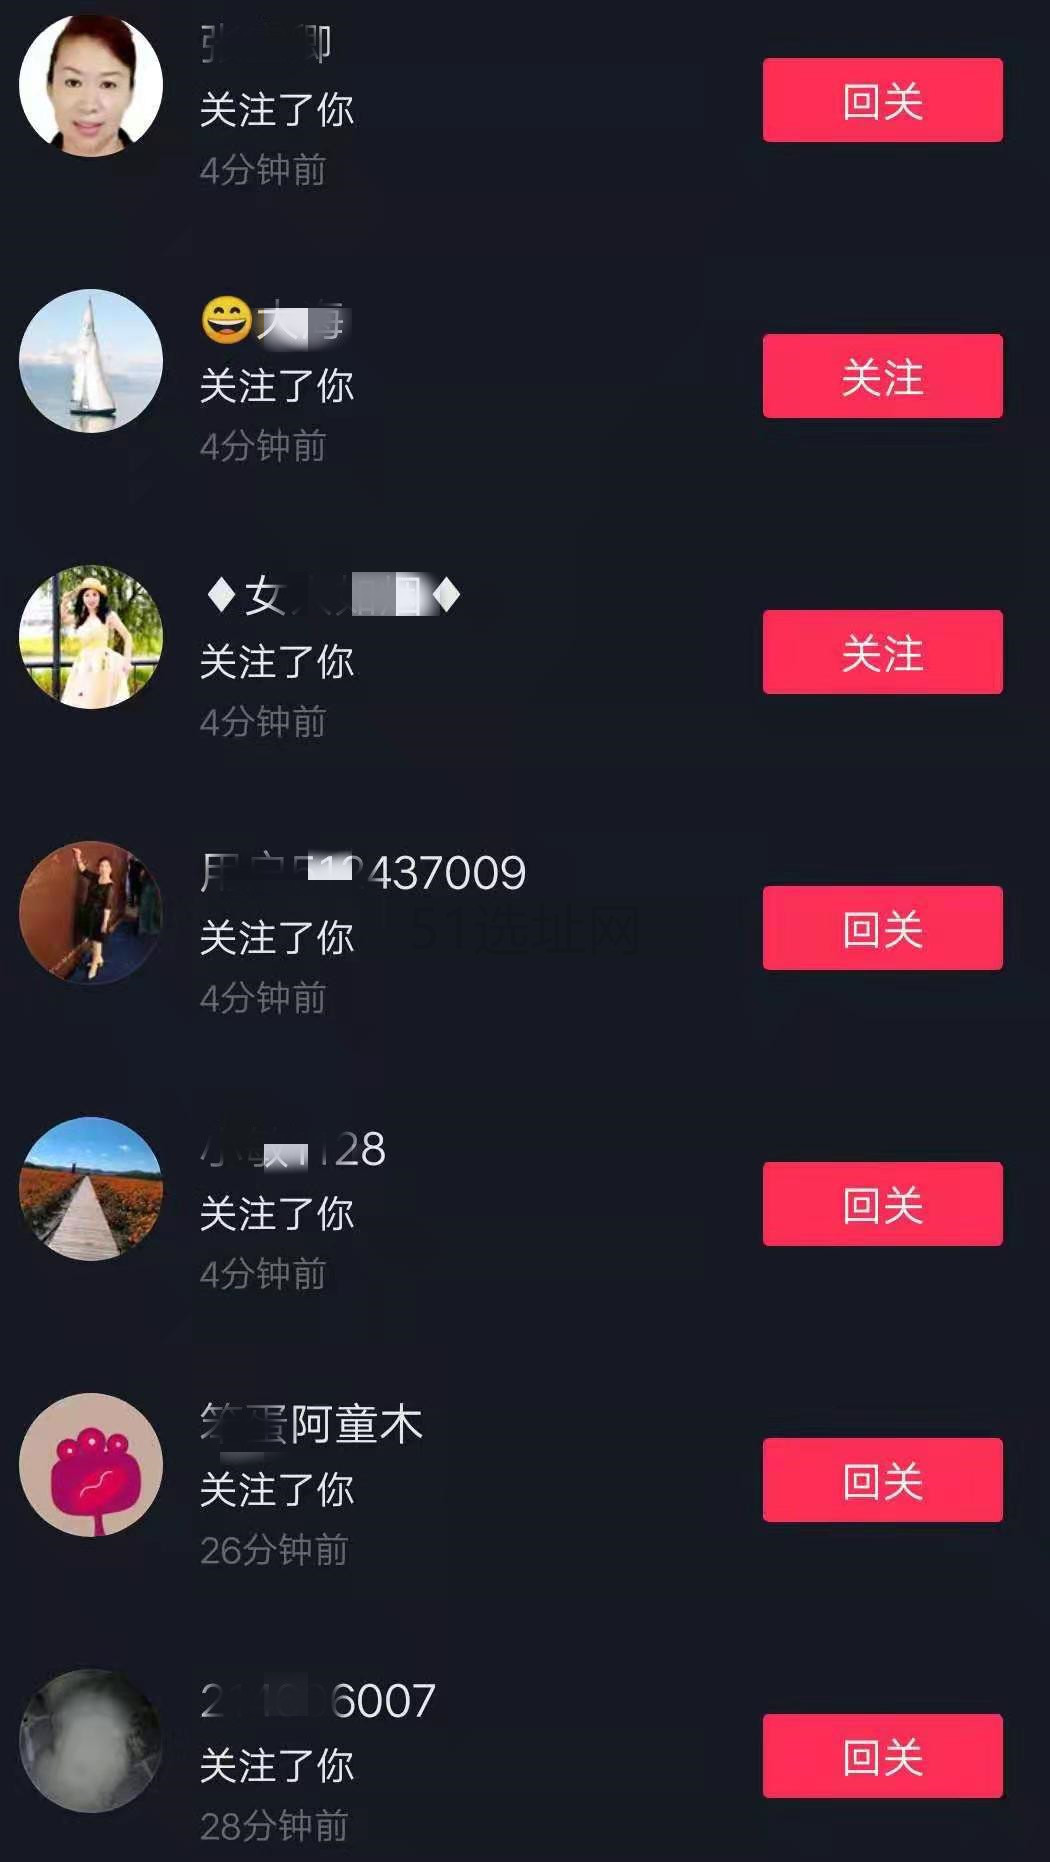 微博不互粉怎么涨粉_互粉平台涨粉王wang_1元涨1000粉快手